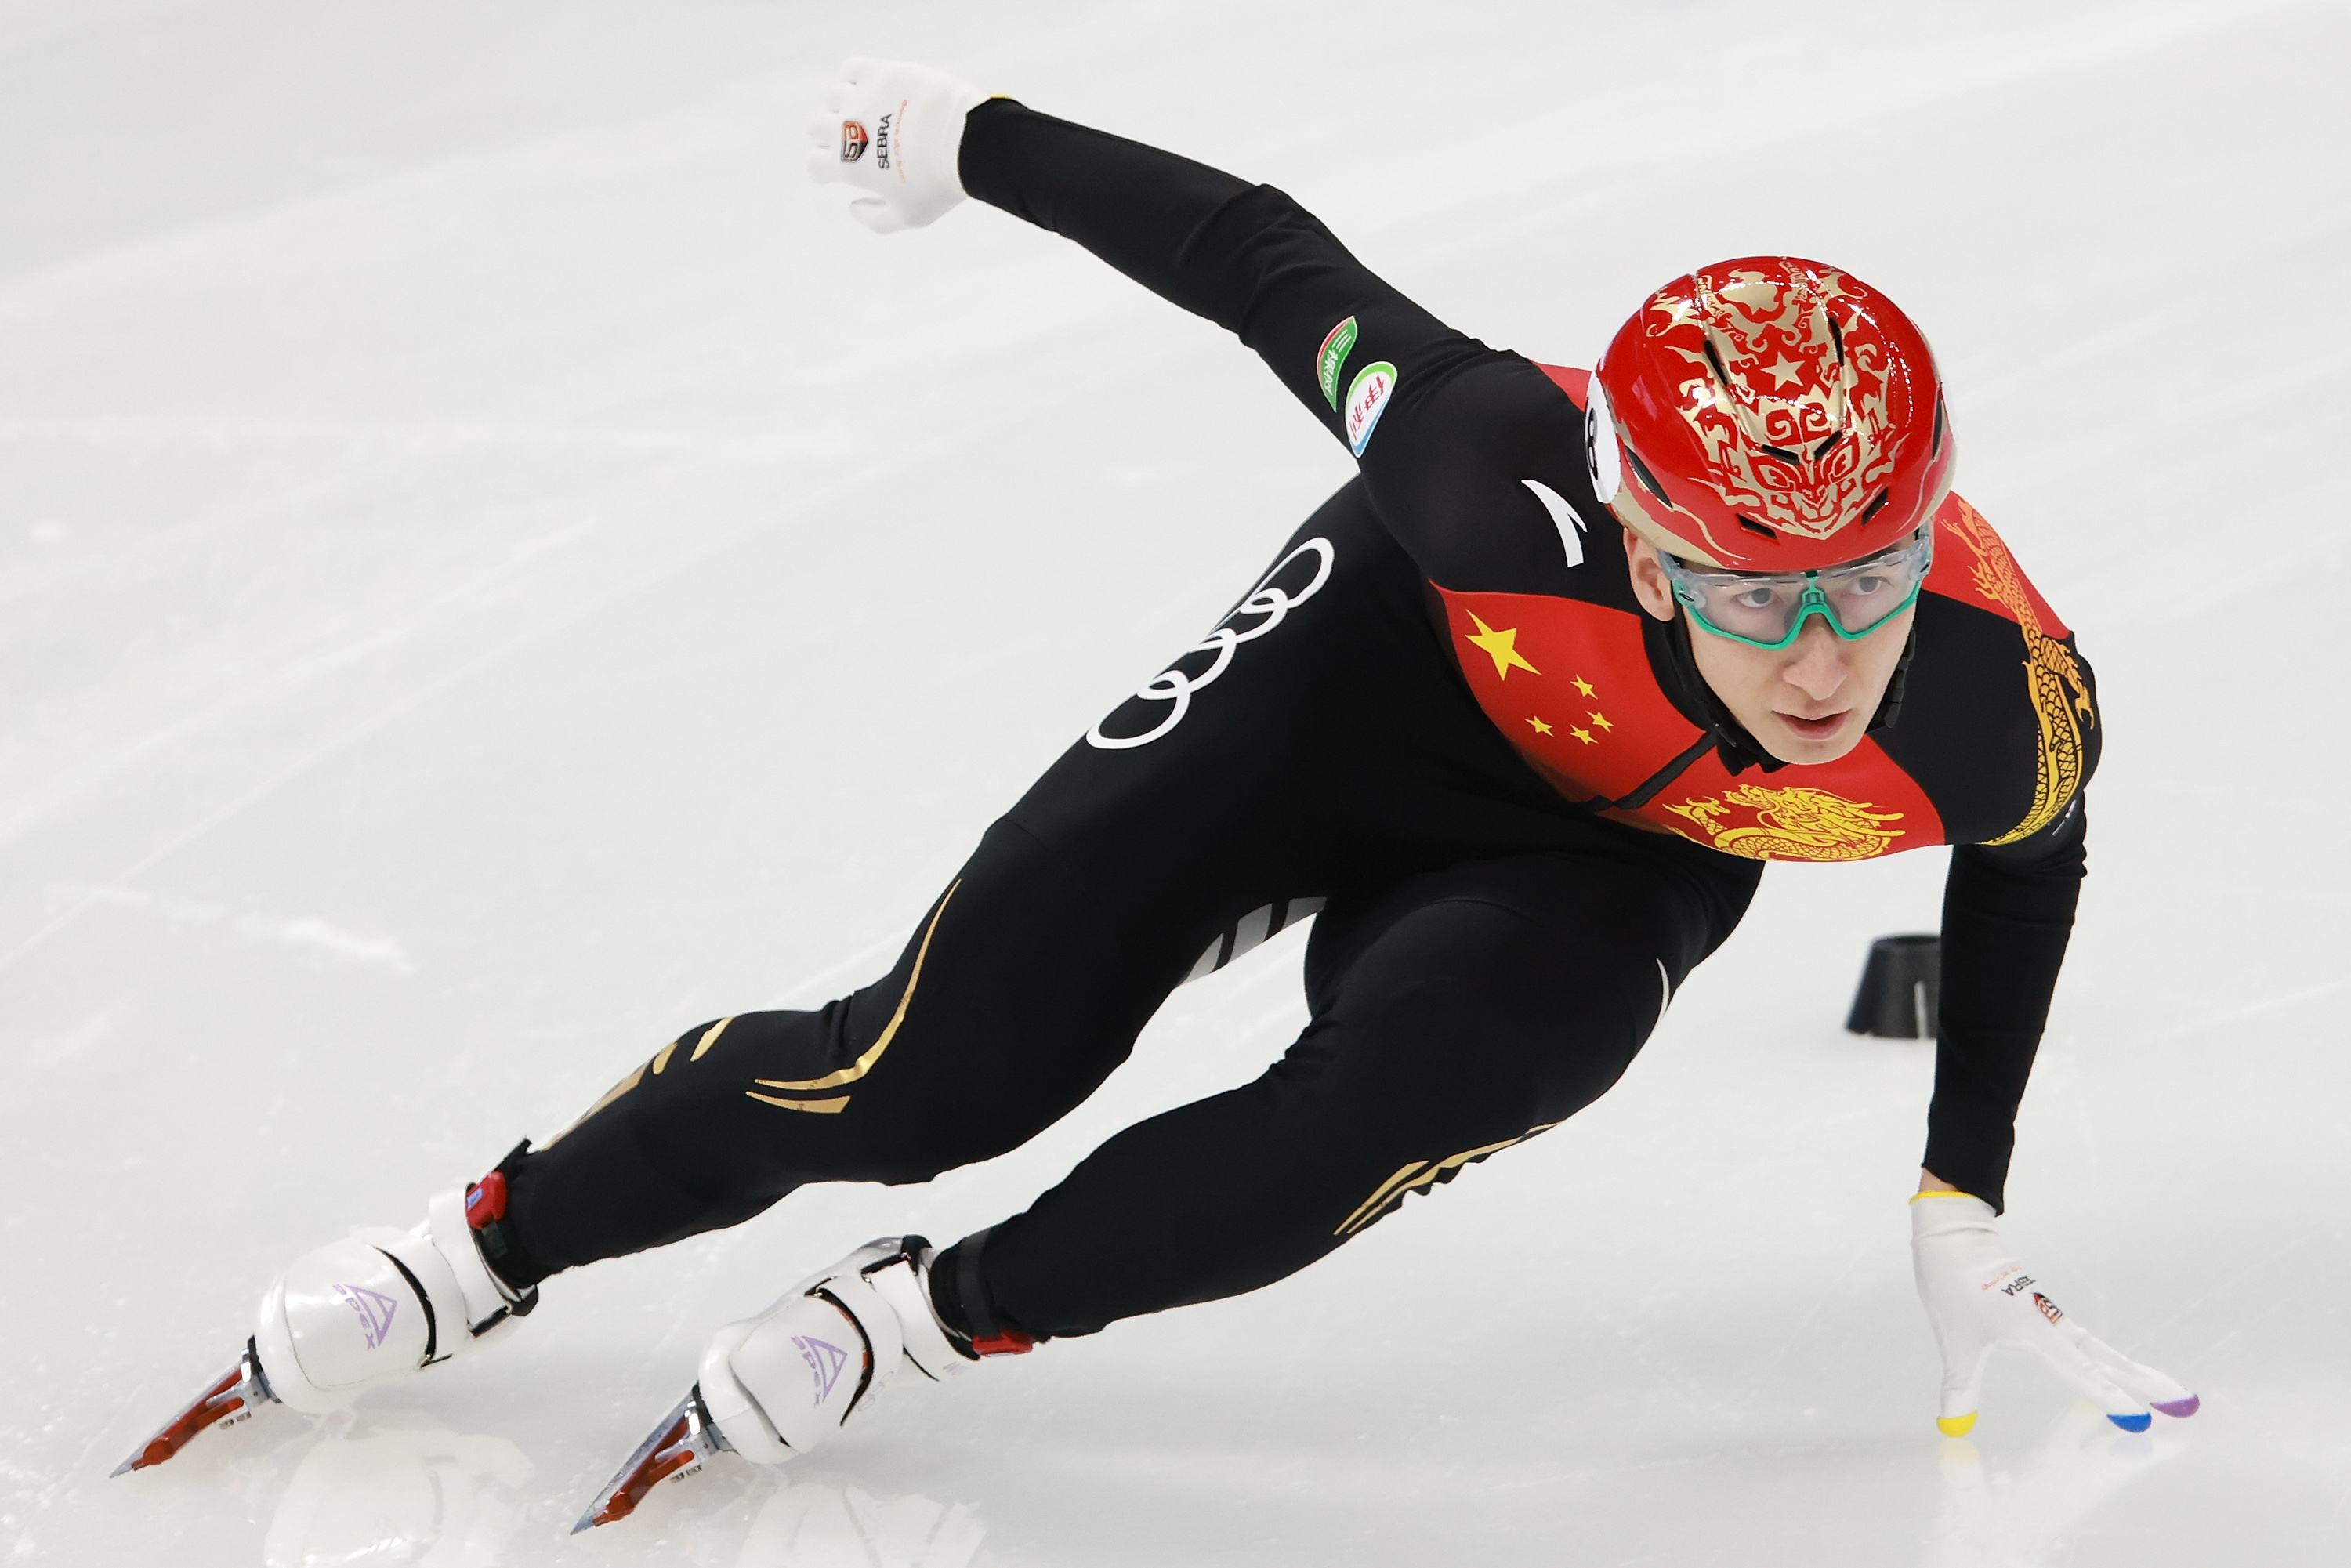 2018年平昌冬季奥运会,在短道速滑男子500米项目上,中国选手武大靖以4